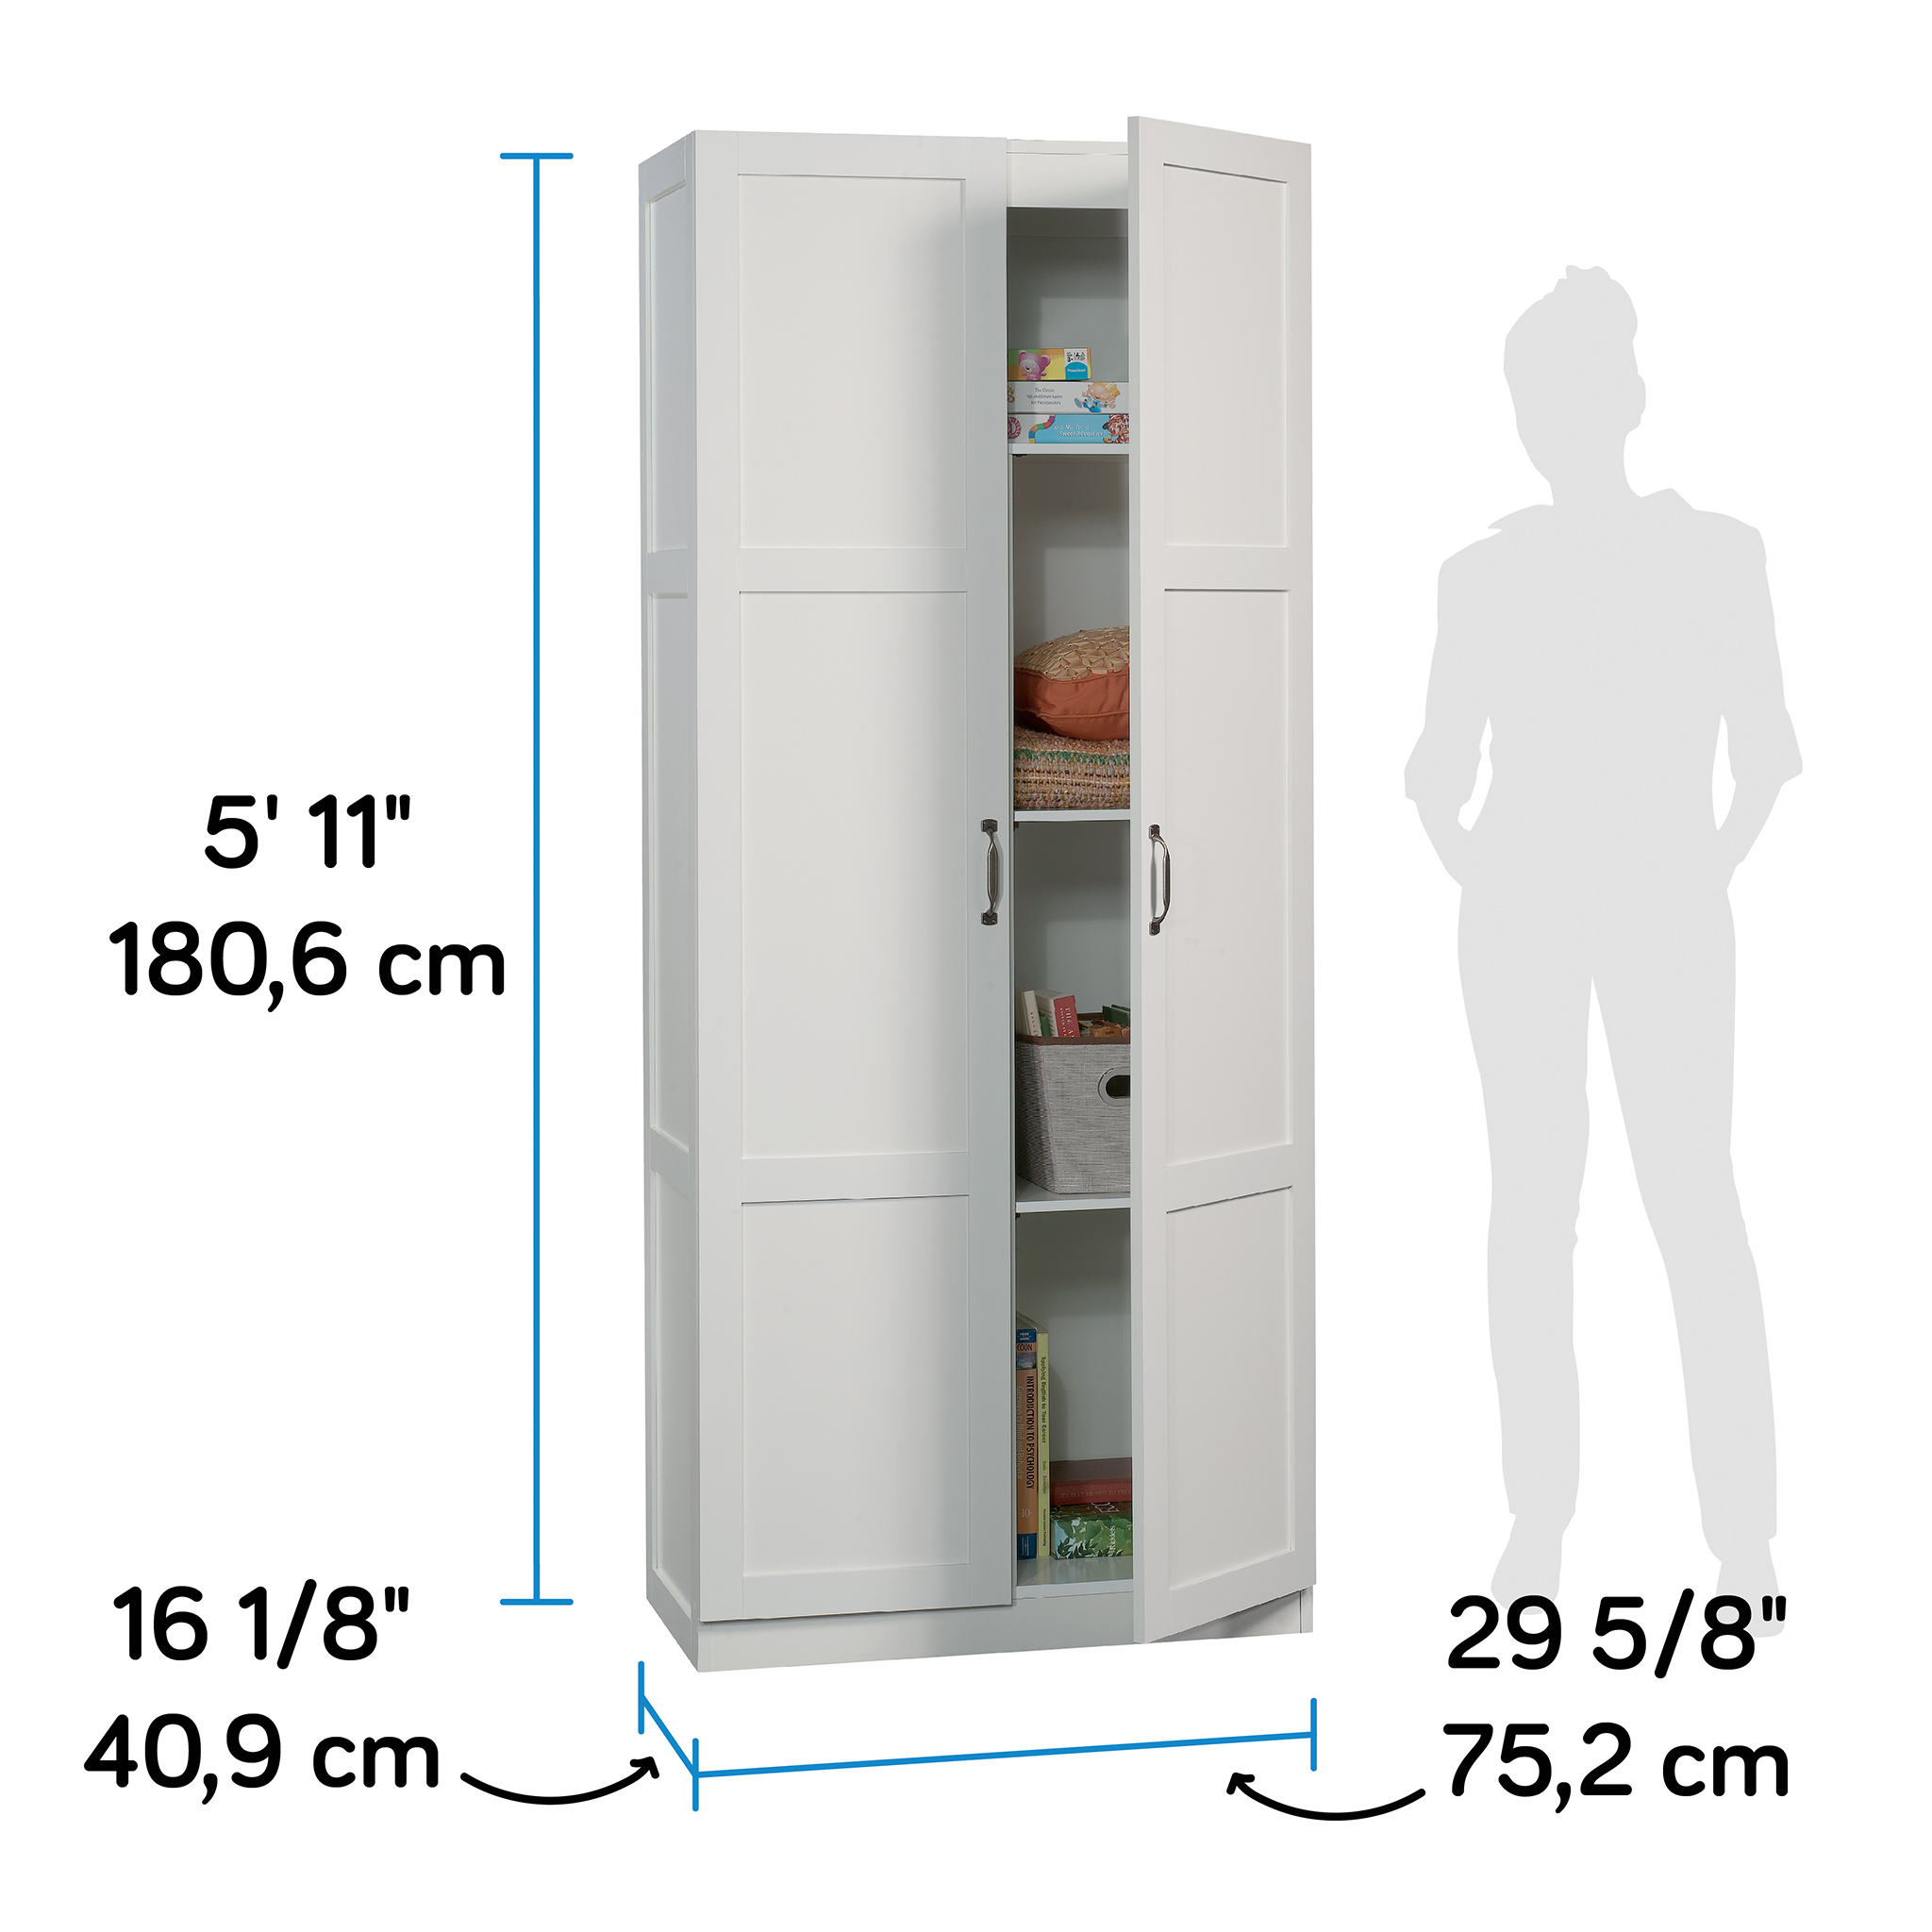 Sauder Storage Cabinet, White Finish - image 4 of 16